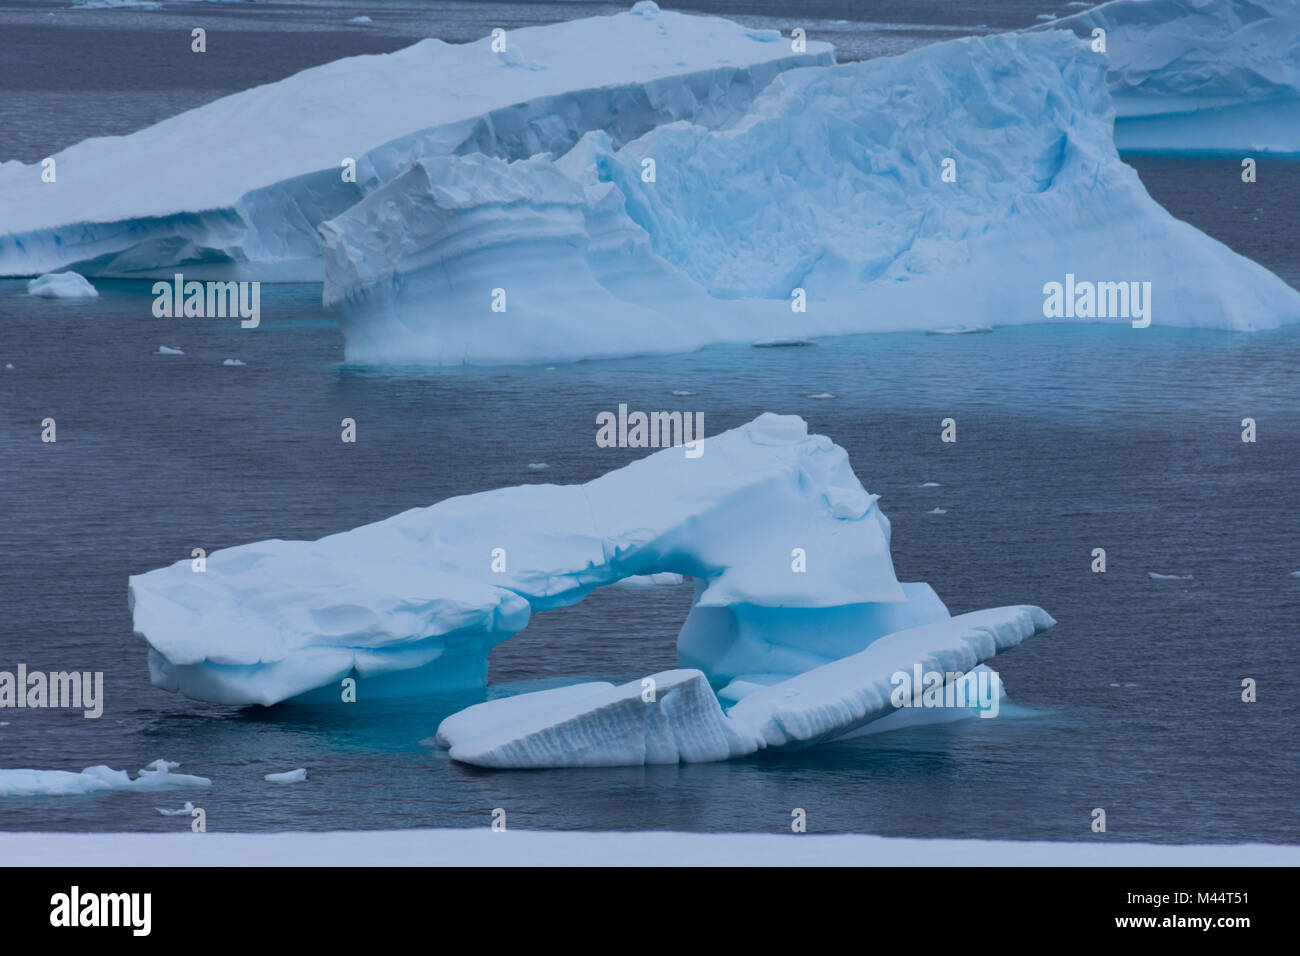 Un bleu turquoise, iceberg dans la baie de Charlotte, l'Antarctique flottant dans l'eau gris bleu de l'océan Austral. Banque D'Images